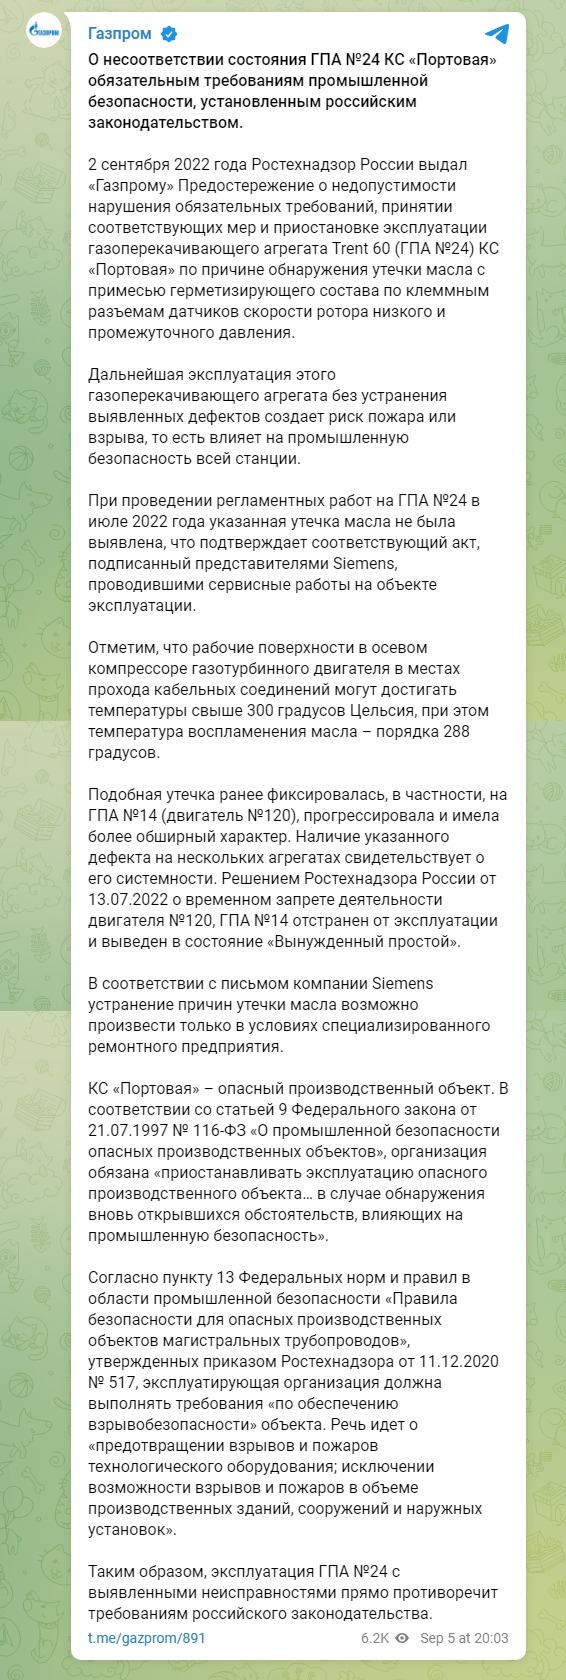 Скриншот из Телеграм Газпрома